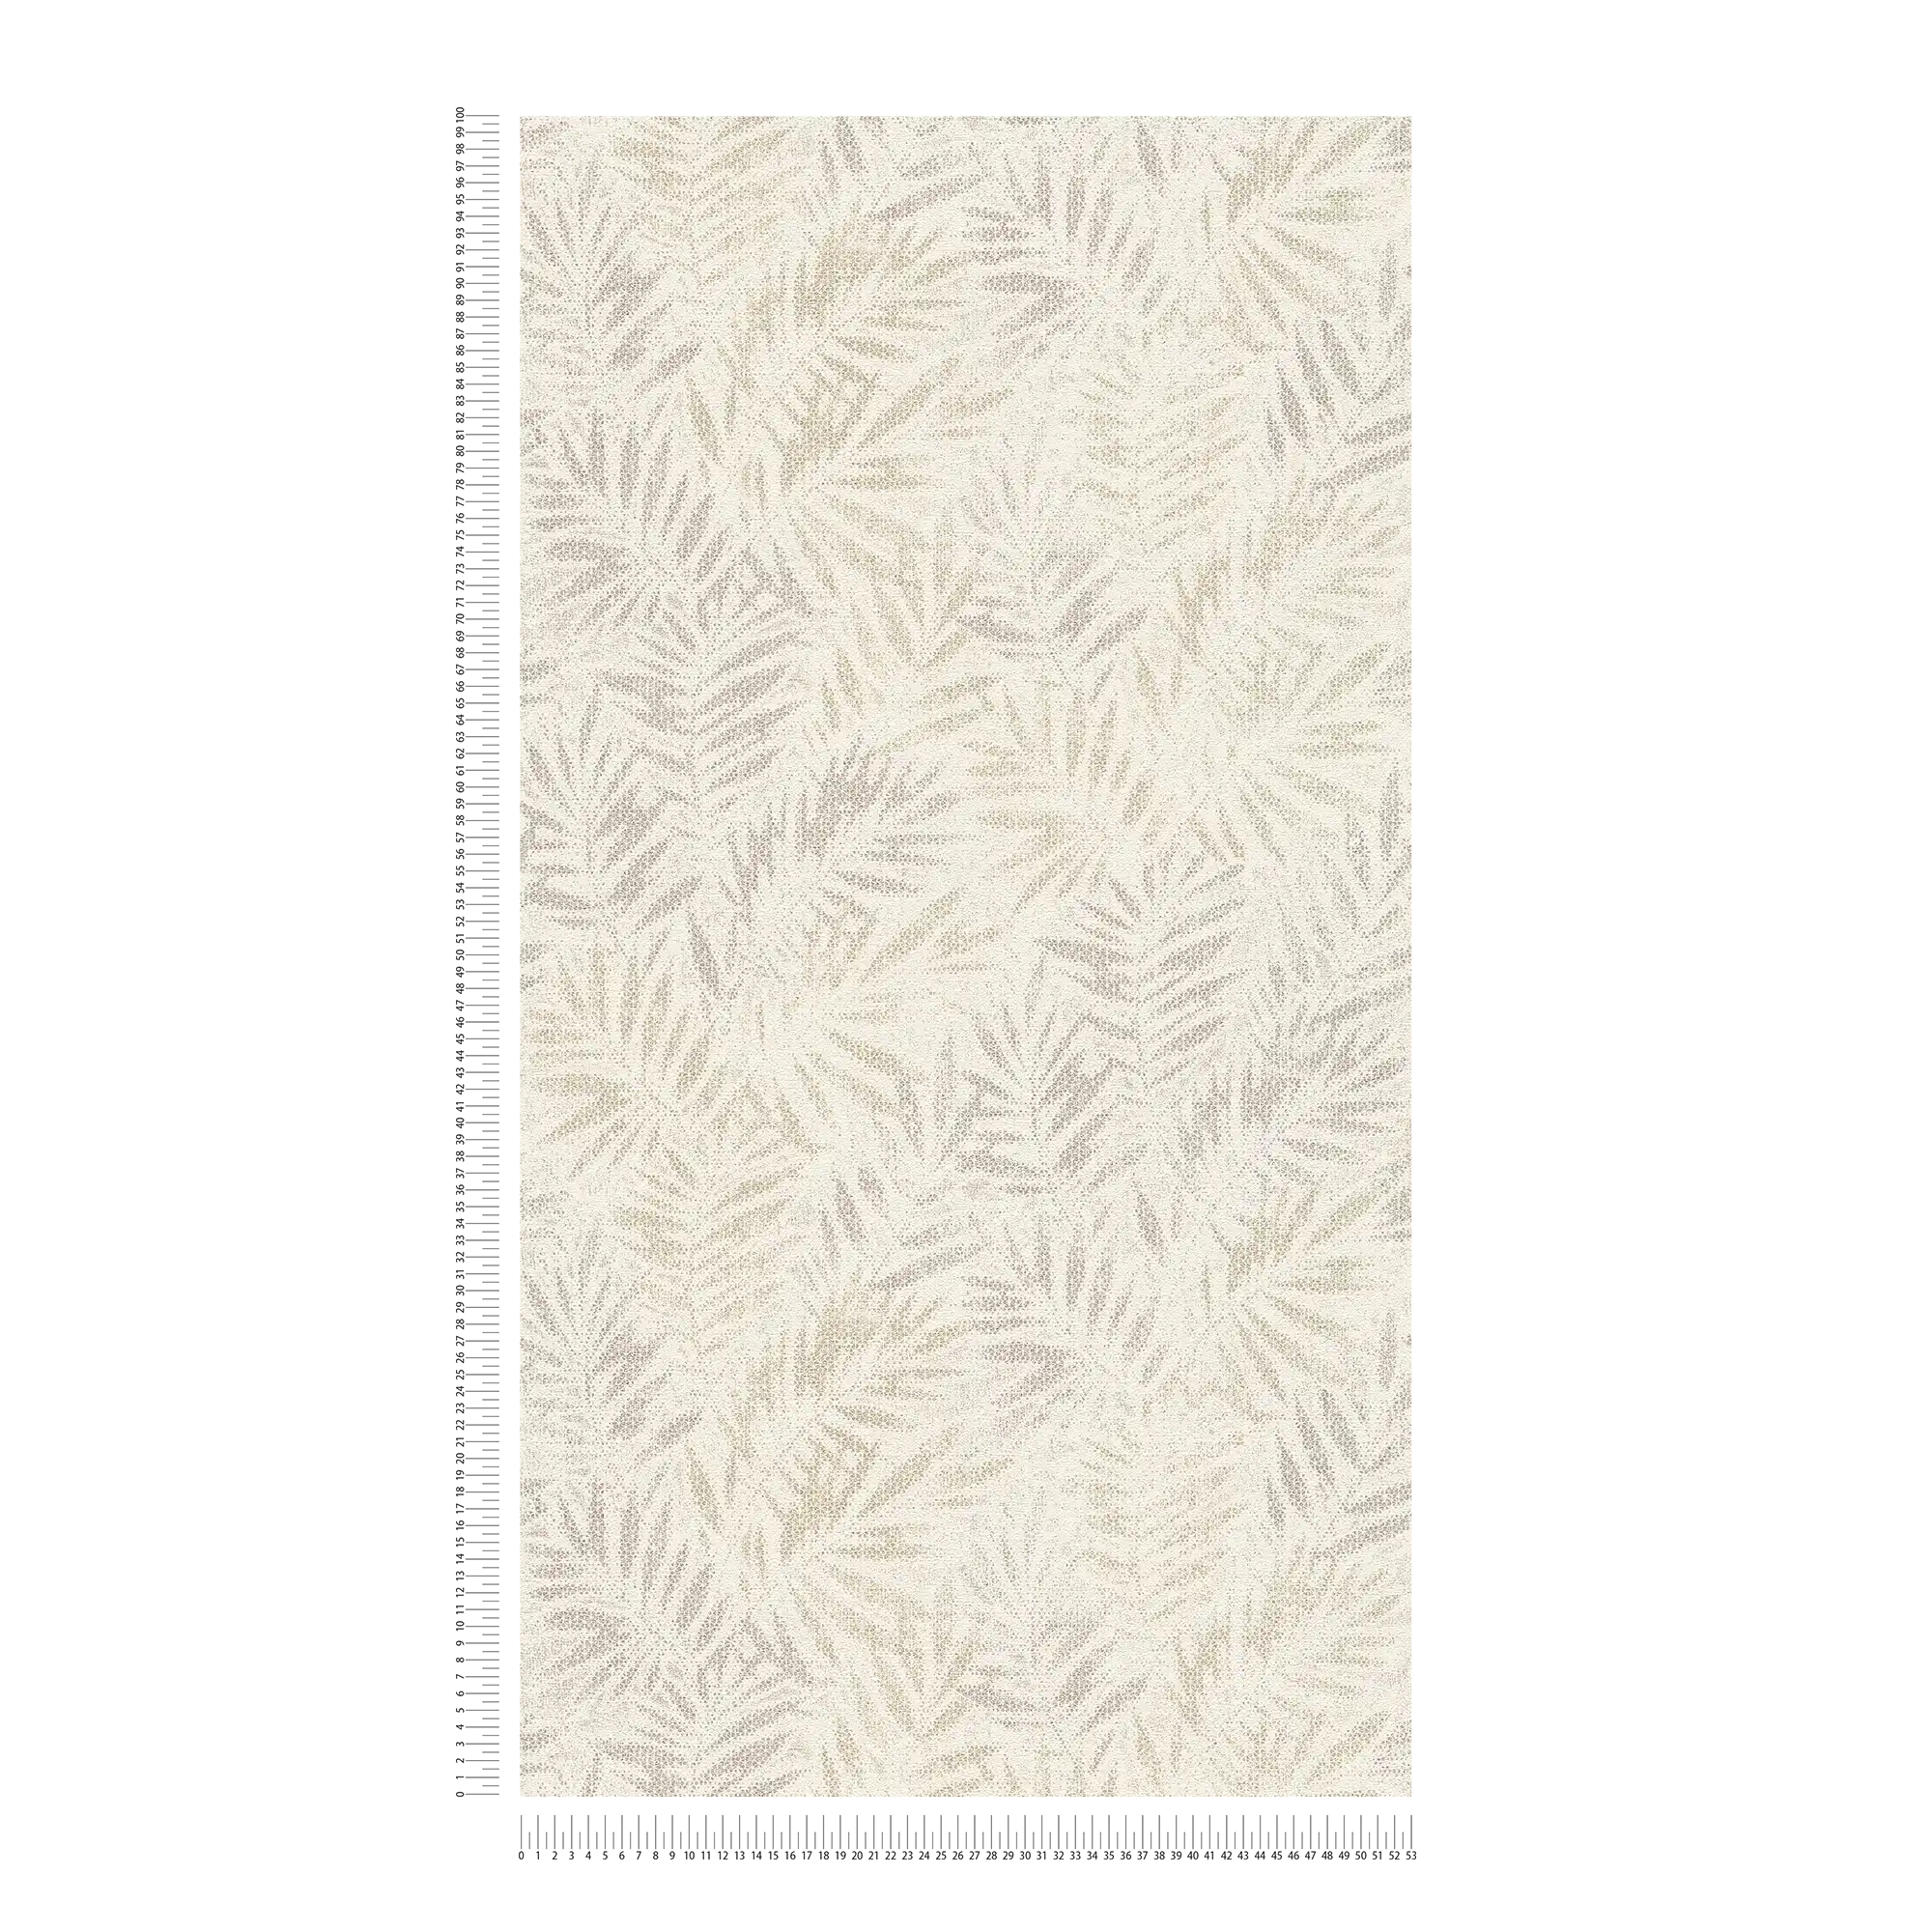             Carta da parati in tessuto non tessuto con motivo a foglie lucide - bianco, grigio, argento
        